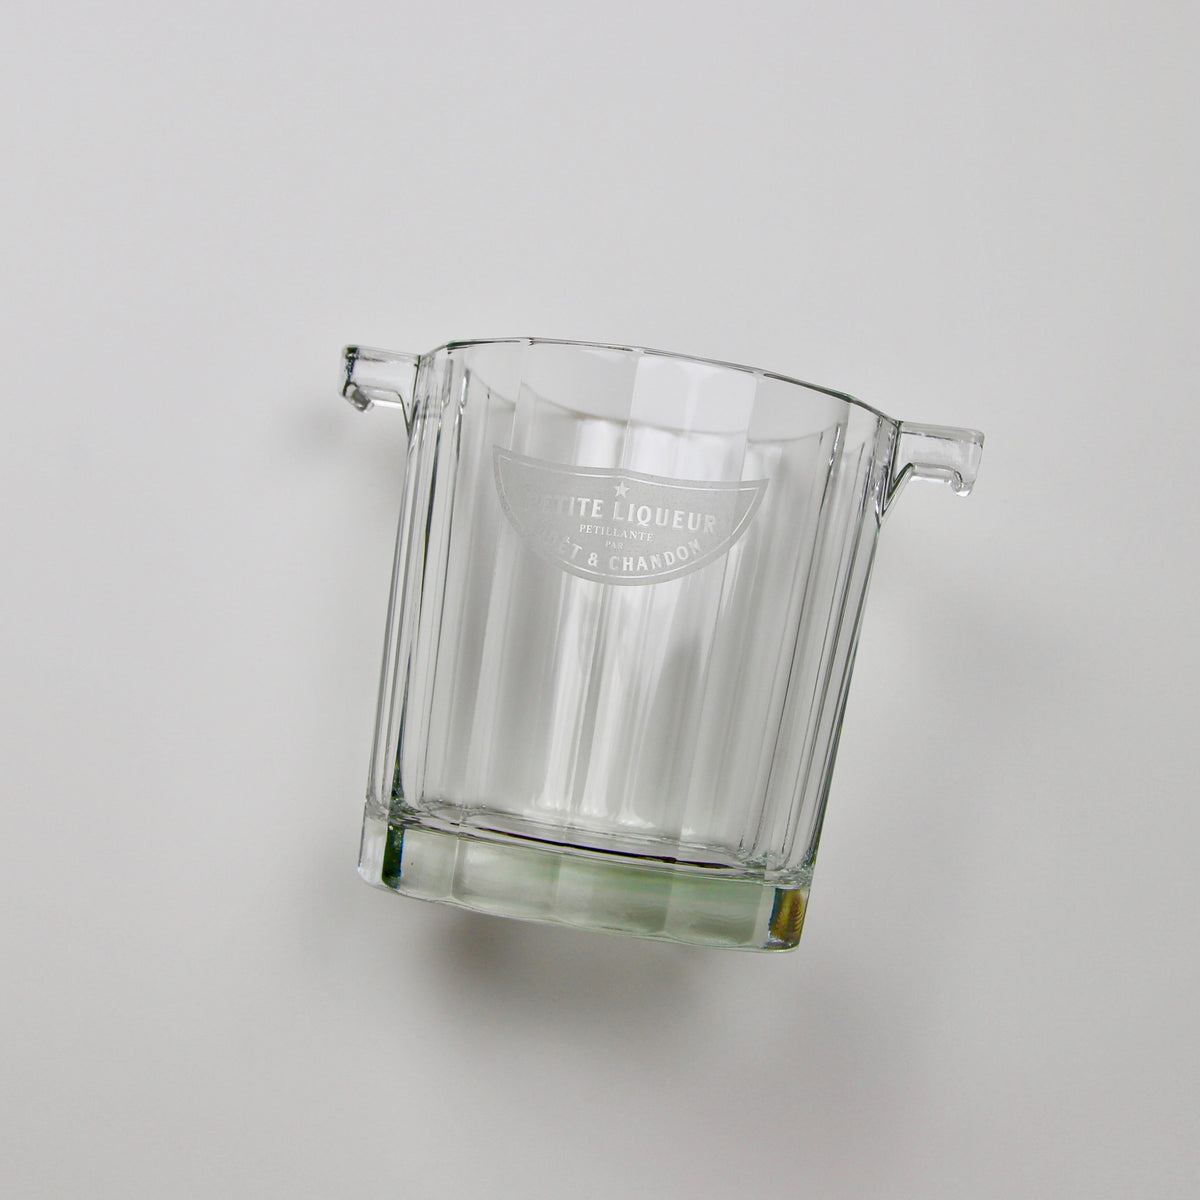 Vintage Moët &amp; Chandon Petite Liqueur Glass Ice Bucket